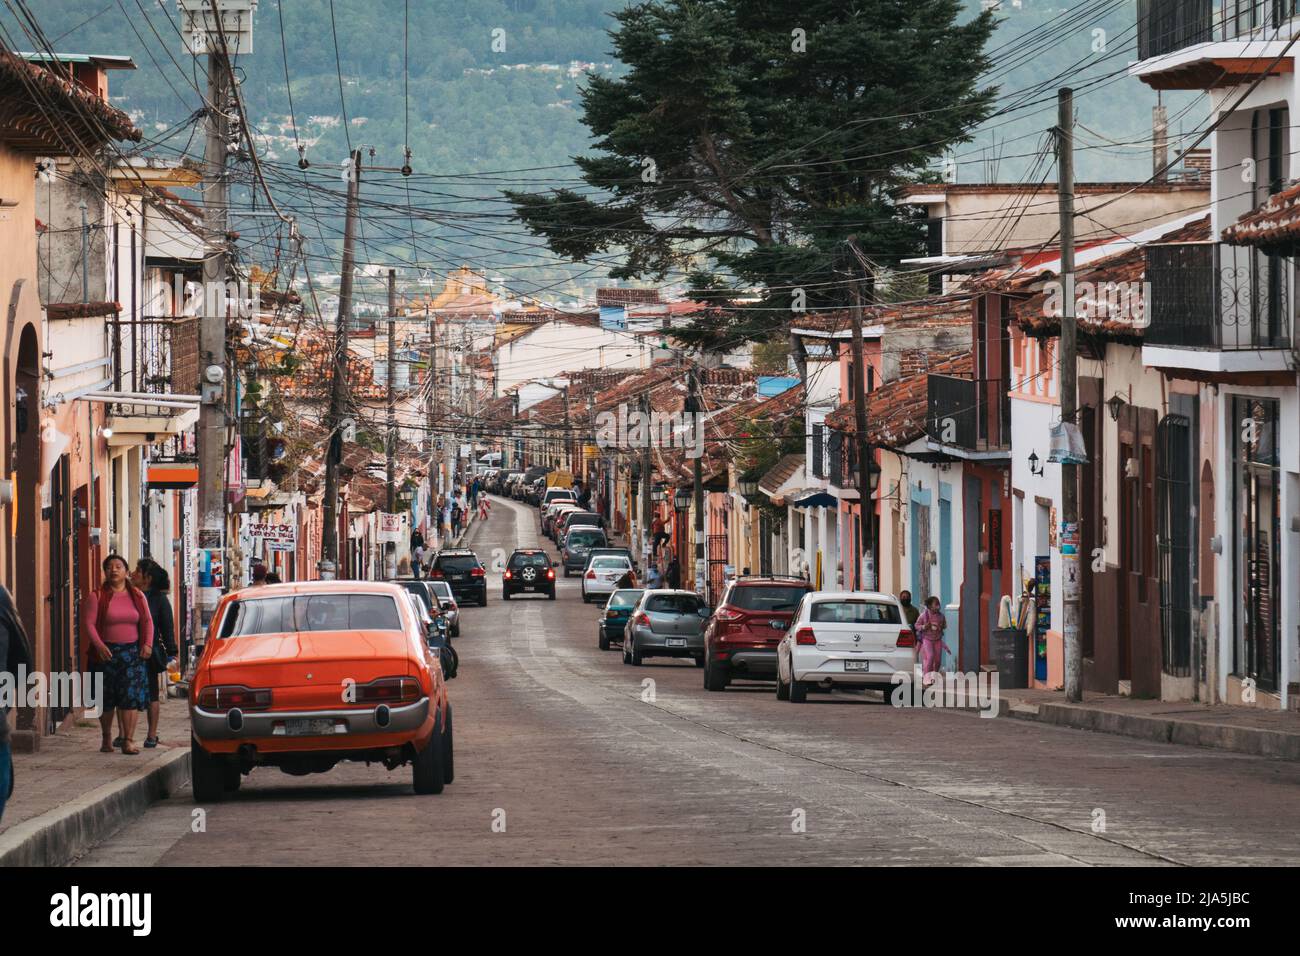 Des rues colorées du centre-ville de San Cristobal de las Casas, une ville coloniale espagnole dans les montagnes de Chiapas, au Mexique Banque D'Images